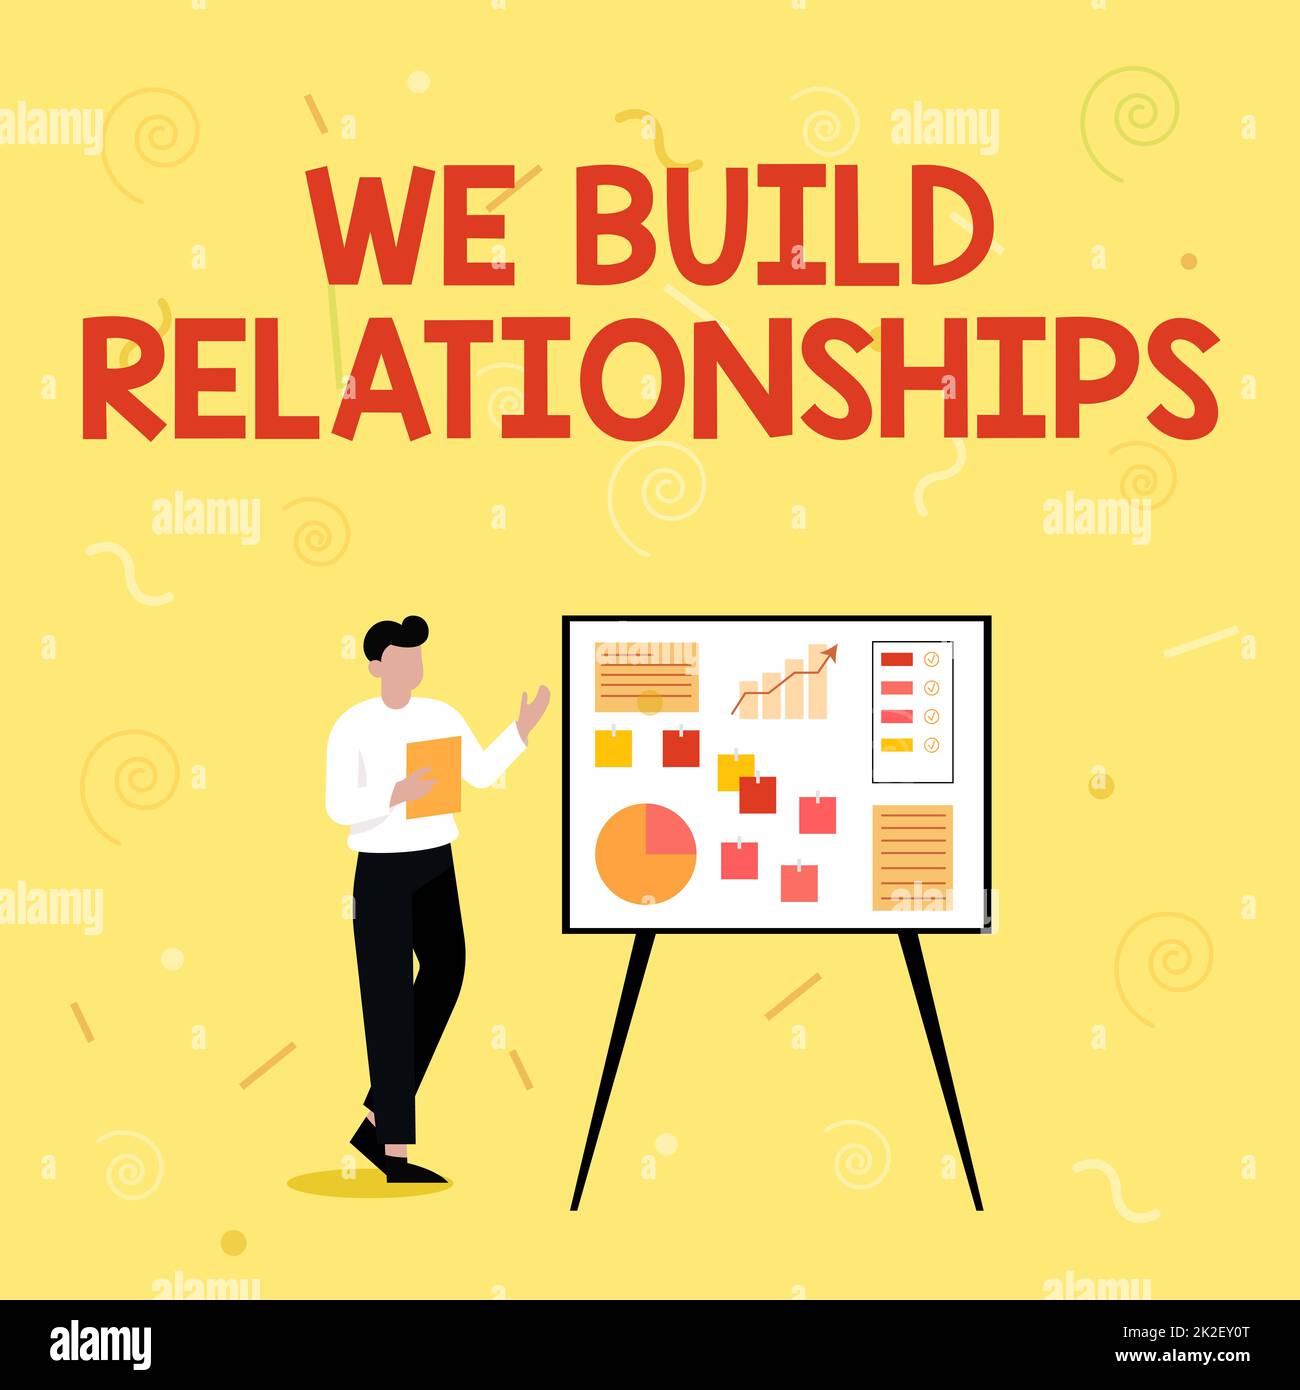 Textunterschrift Präsentation Wir bauen Beziehungen auf. Konzept bedeutet, dass wir Beziehungen aufbauen Geschäftsmann Zeichnen Standing präsentiert Ideen für ihren Erfolg. Stockfoto